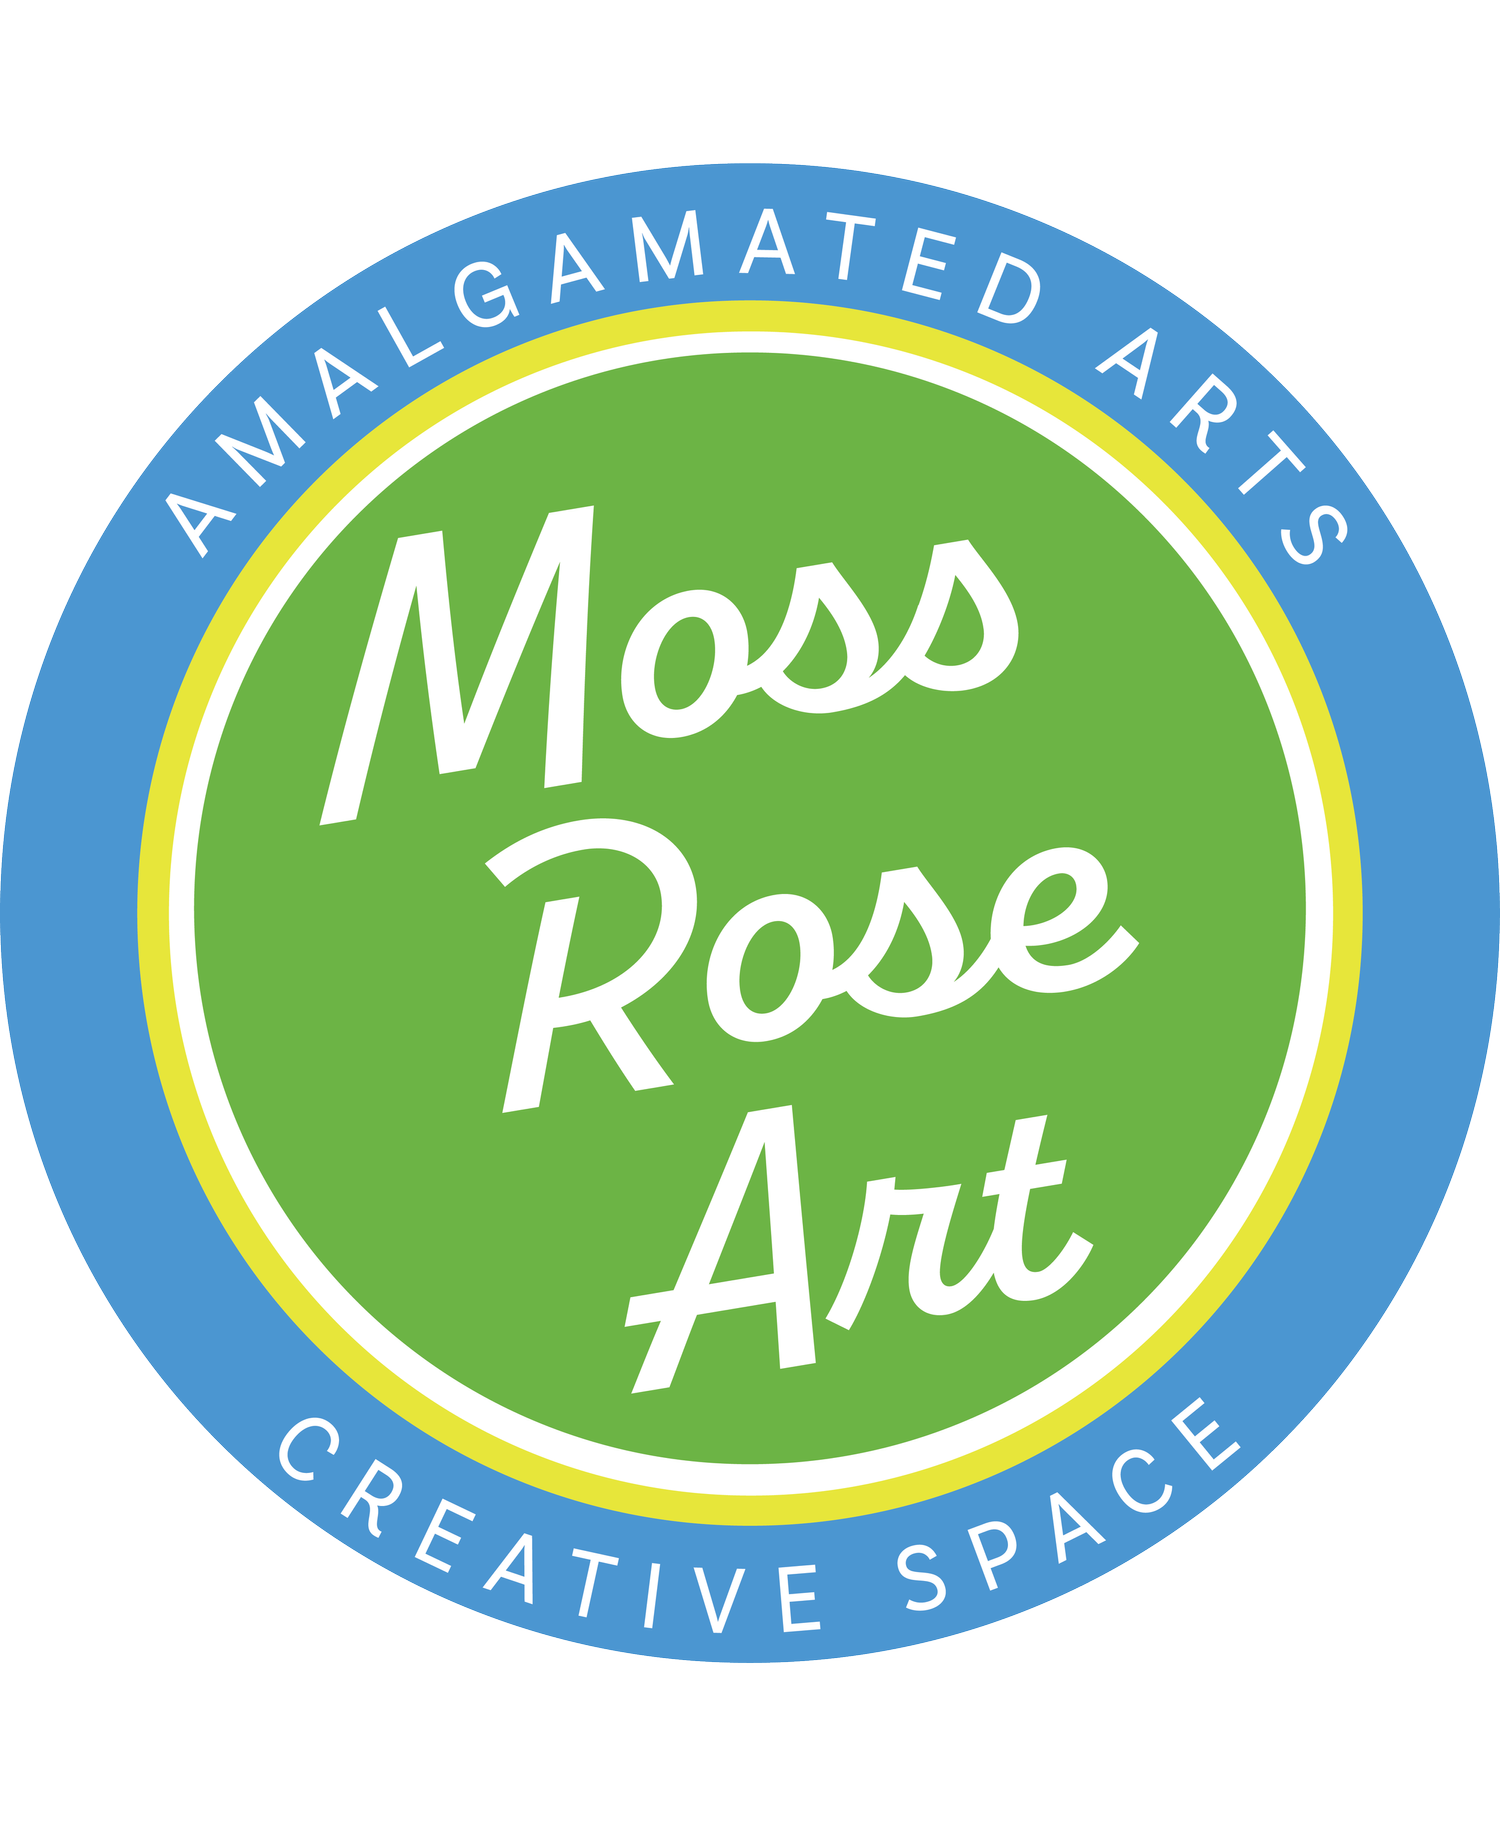 Moss Rose Art